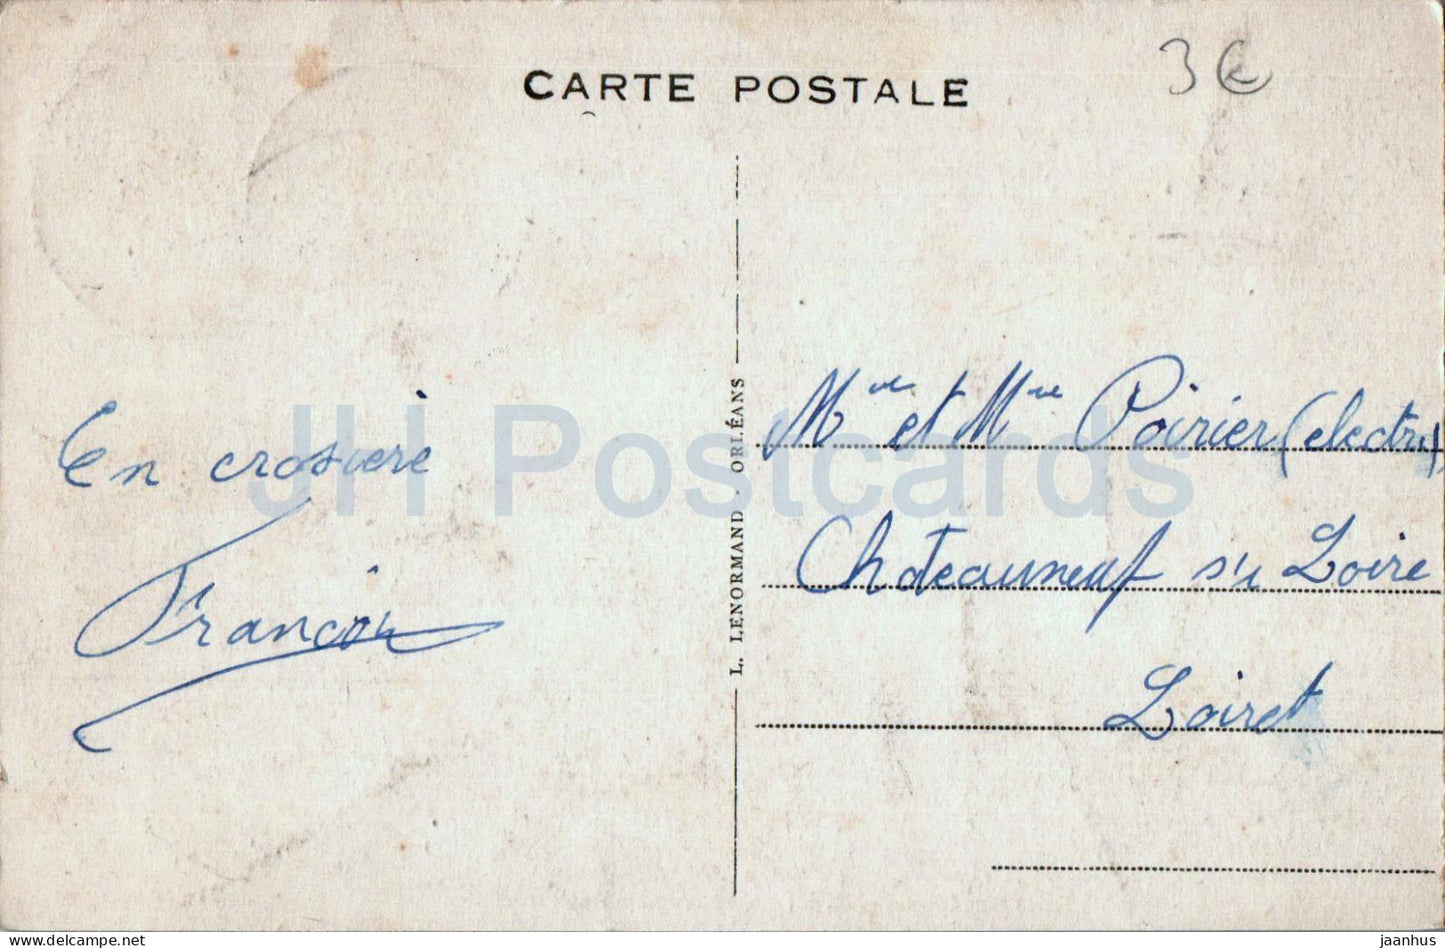 Chatillon sur Loire - Les Bords de la Loire - bridge - old postcard - 1935 - France - used